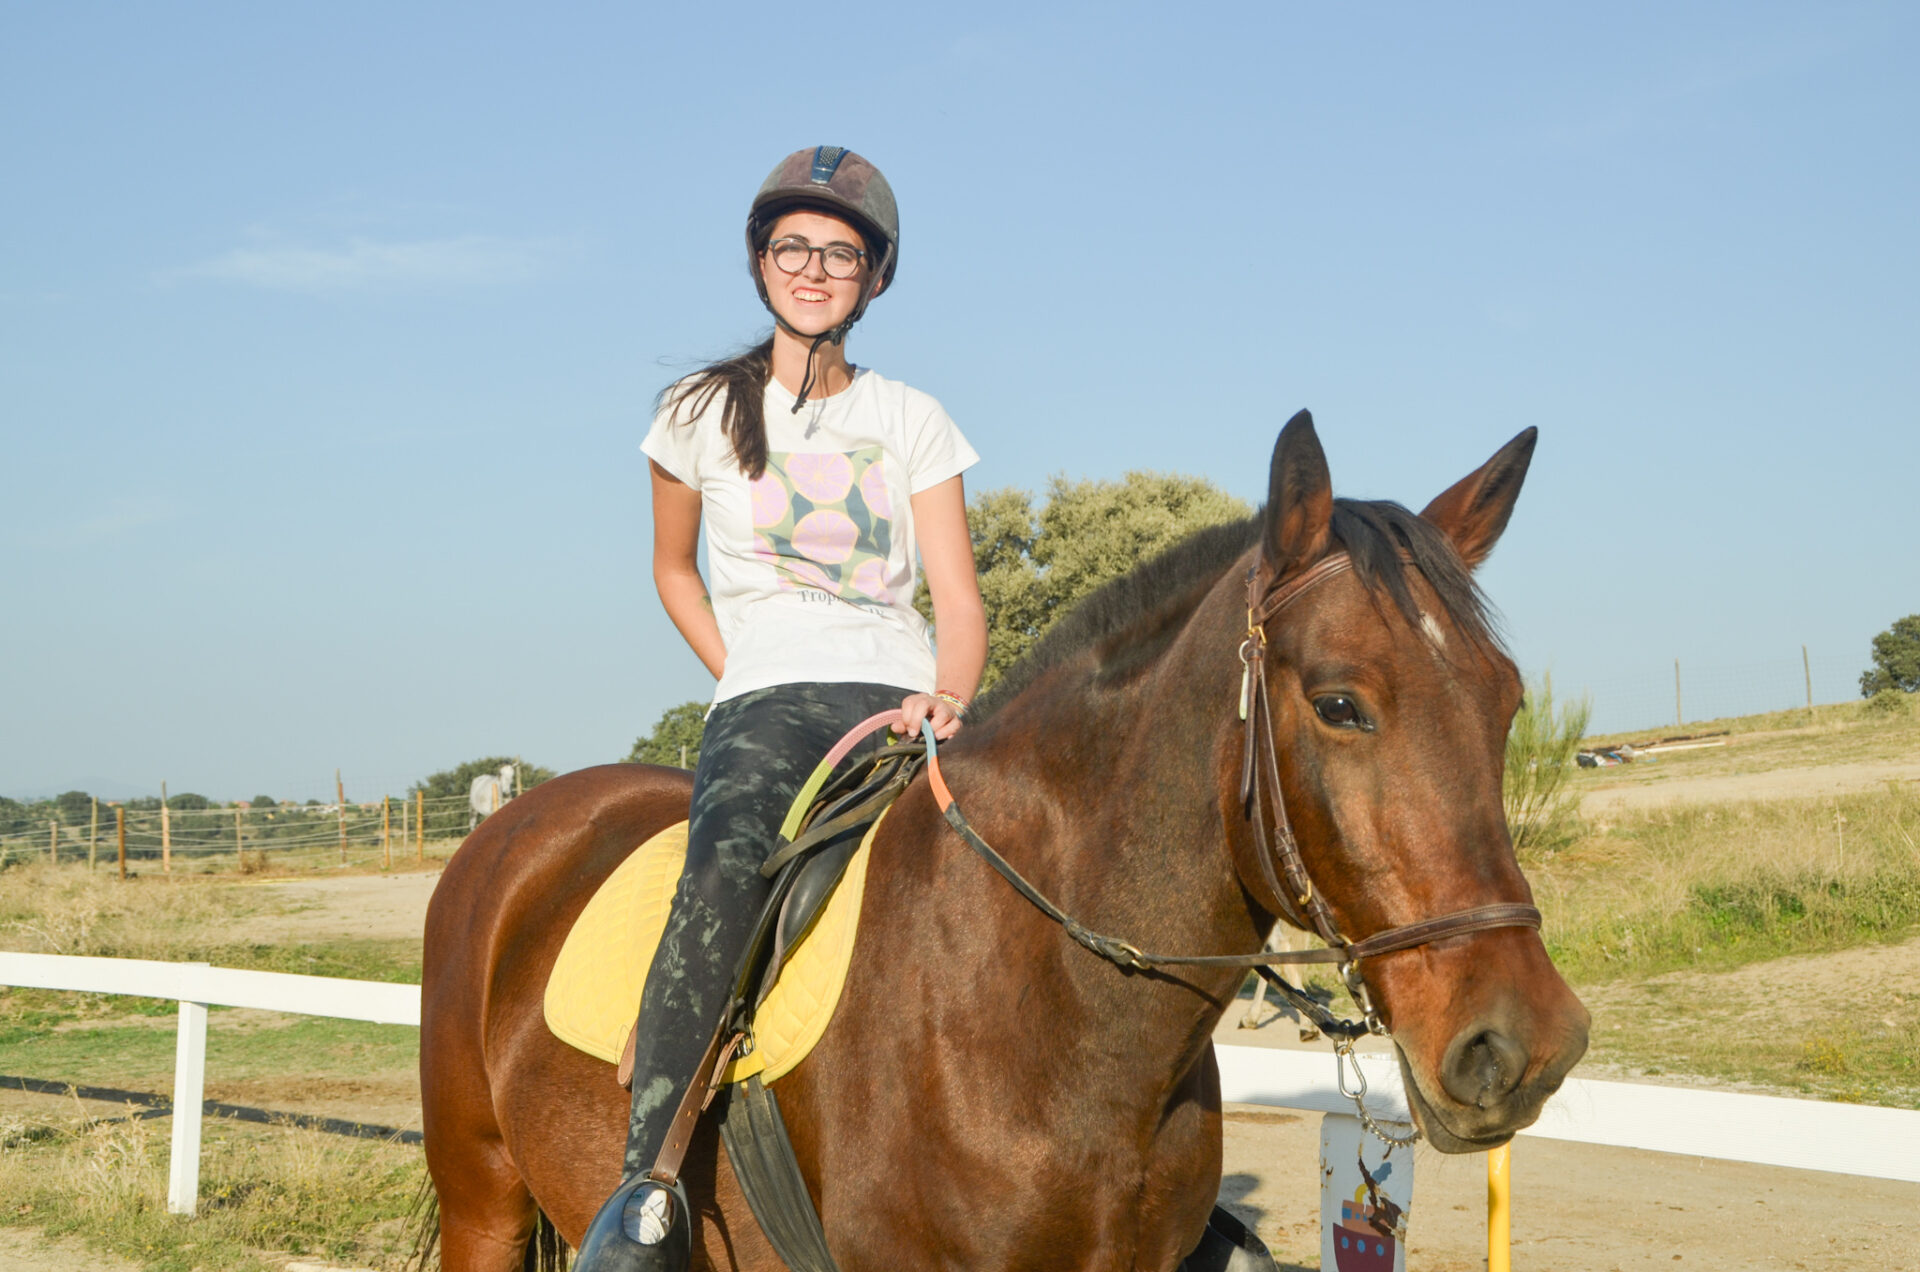 Fotografía de una chica montando a caballo durante una actividad